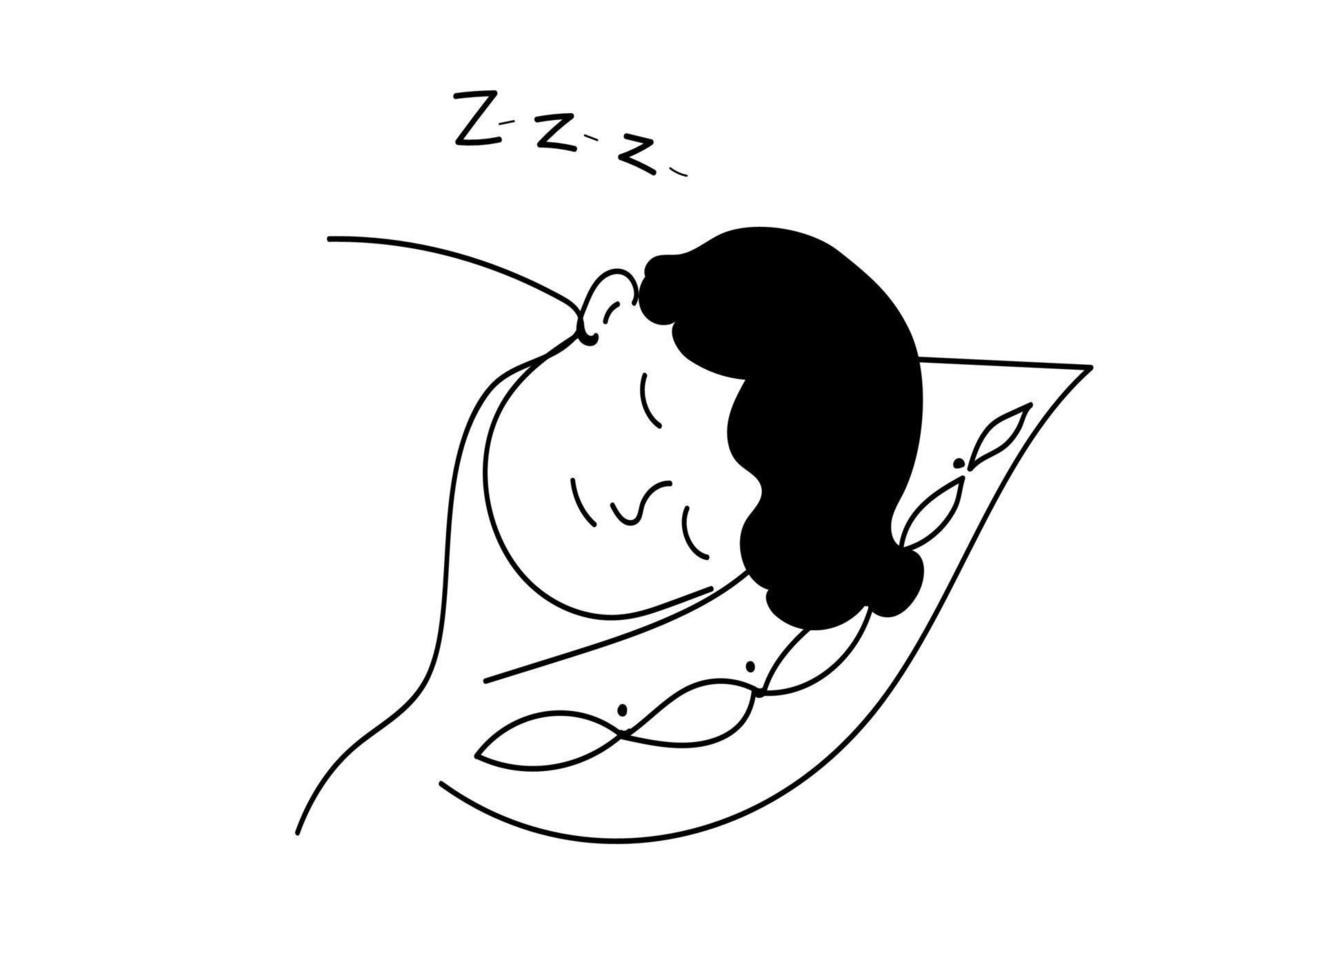 hygiène du sommeil, personne dort, illustration de croquis dessinés à la main de doodle vectoriel